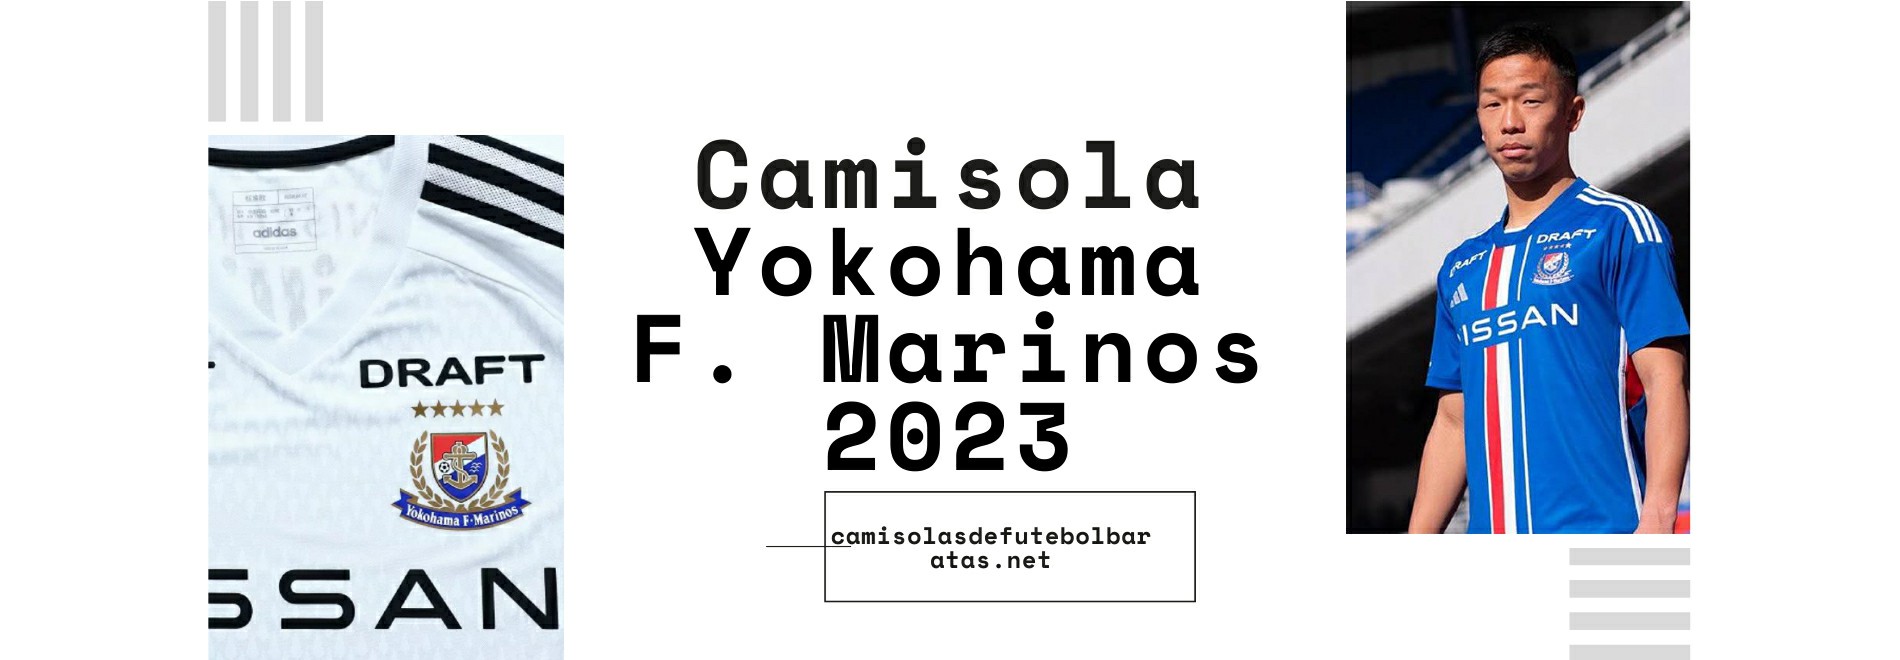 Camisola Yokohama F. Marinos 2023-2024